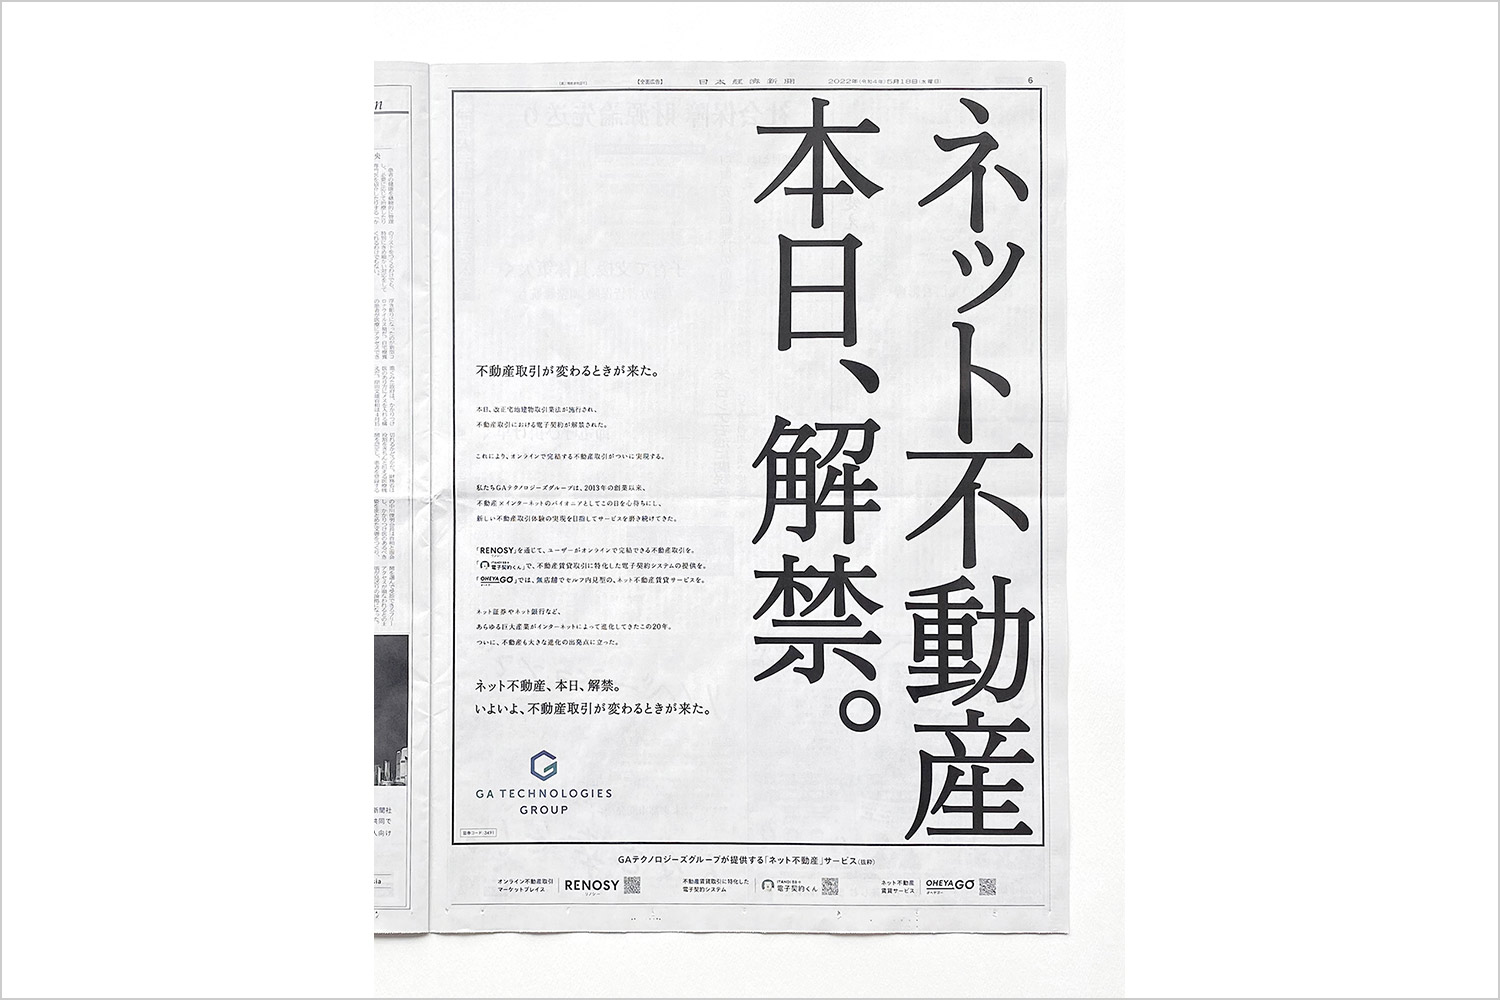 「ネット不動産 本日、解禁。」、ネット不動産サービス「RENOSY」が日本経済新聞に広告を掲載